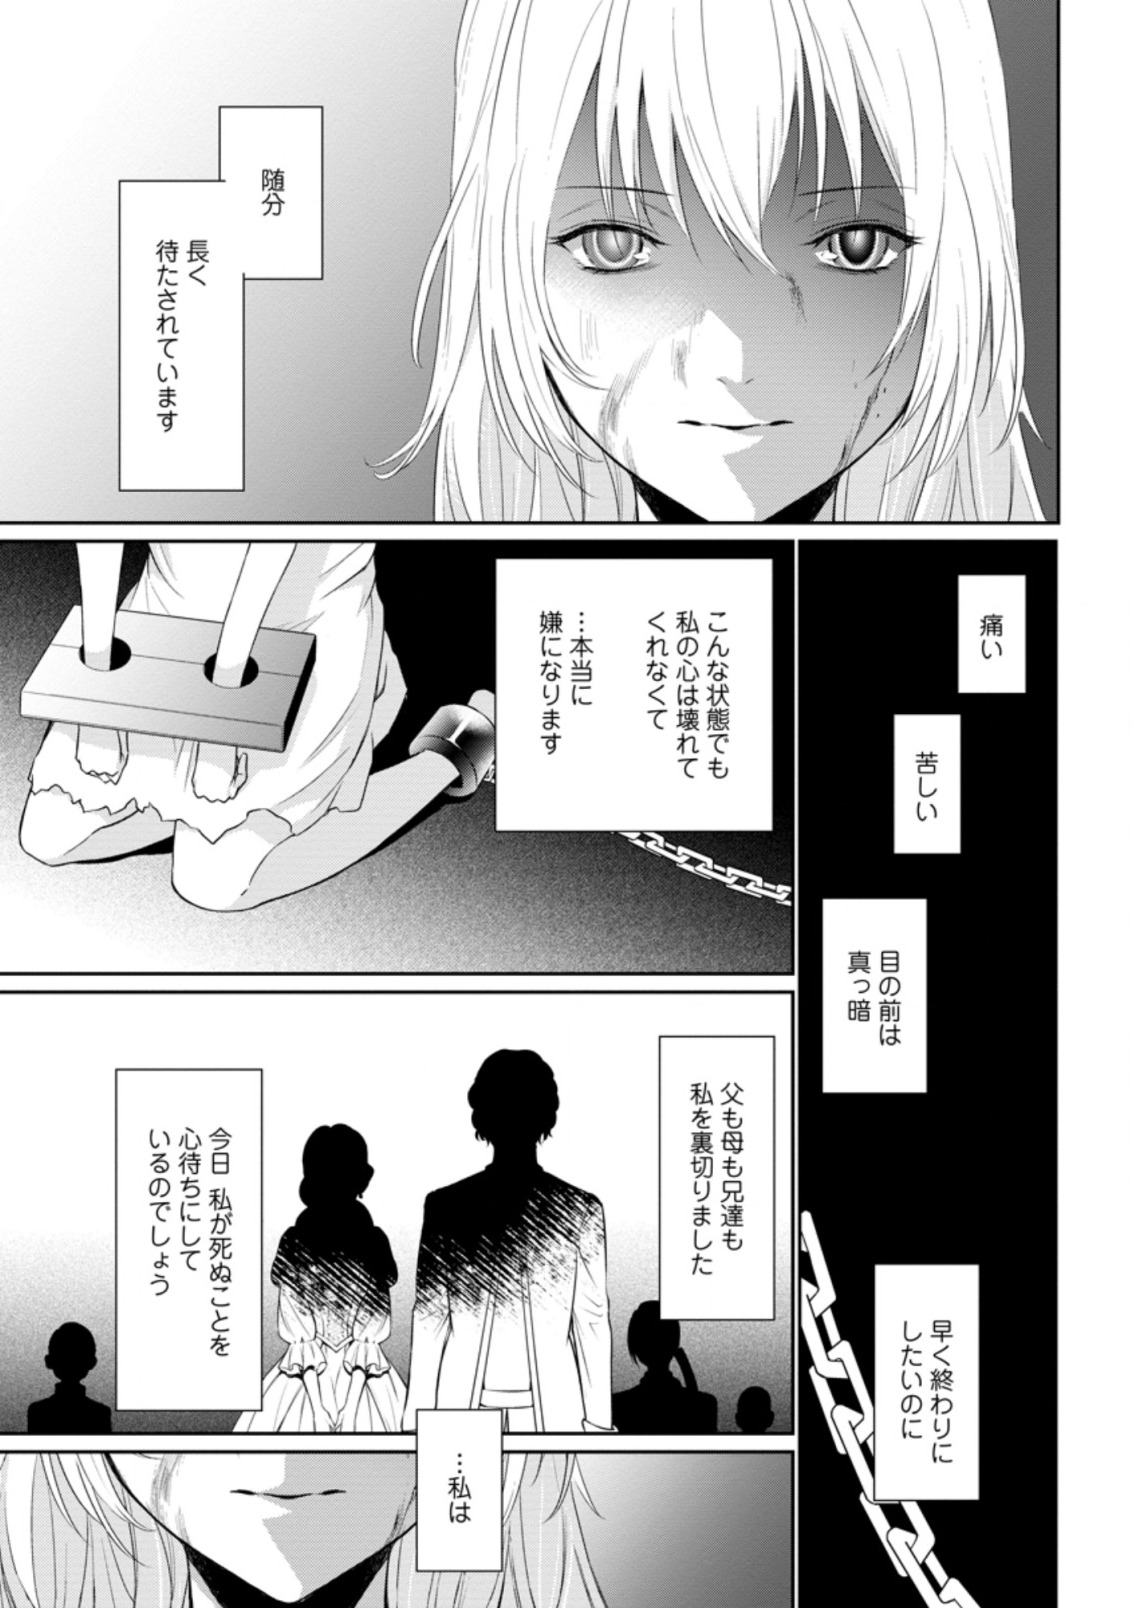 Damasare Uragirare Shokei Sareta Watashi Ga…… Dare wo Shinjirareru To iu Nodesho (Manga) - Chapter 1.1 - Page 1